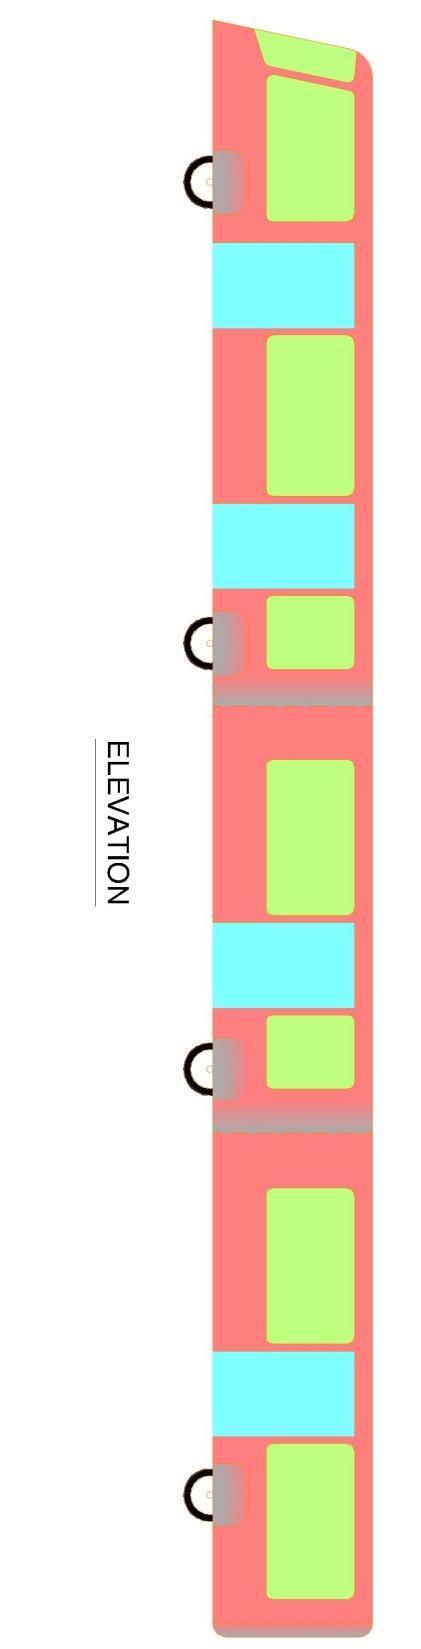 Bie-Bus: Typical Floor Plan & Elevation LEAD BUS